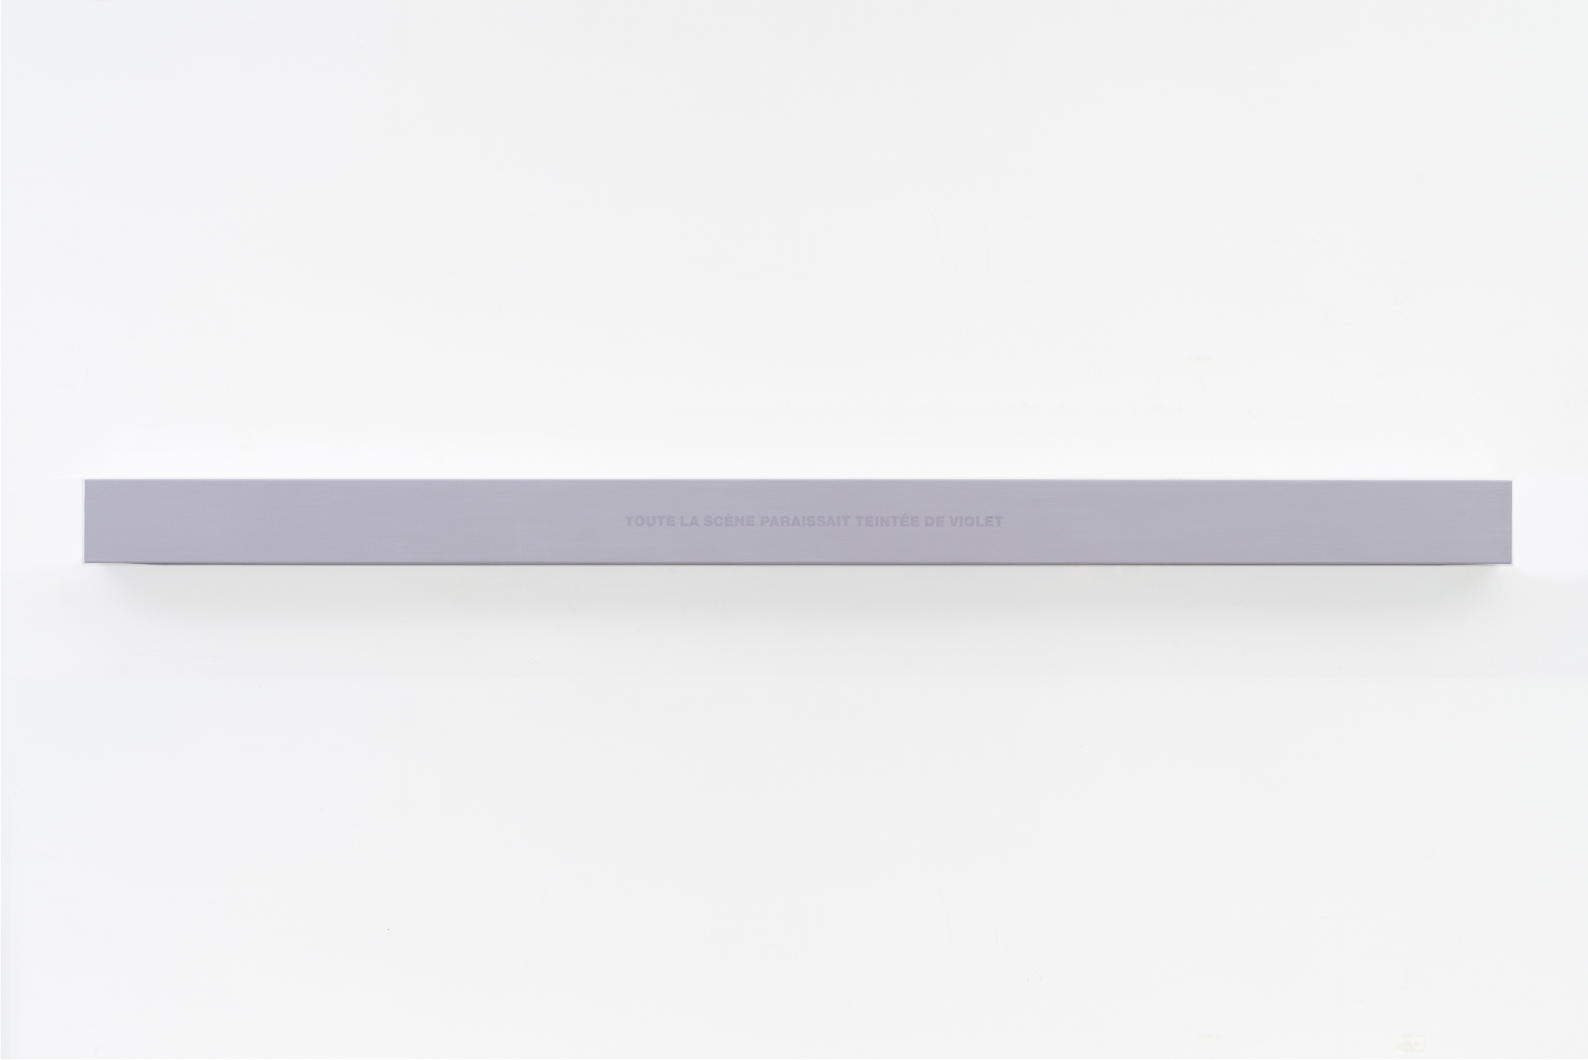 Francine Savard, Lumière de la scène, 2018, Médiums mixtes sur toile marouflée sur caisson de bois, 10,16 × 177,8 × 10,16 cm / 4 x 70 x 4 pouces